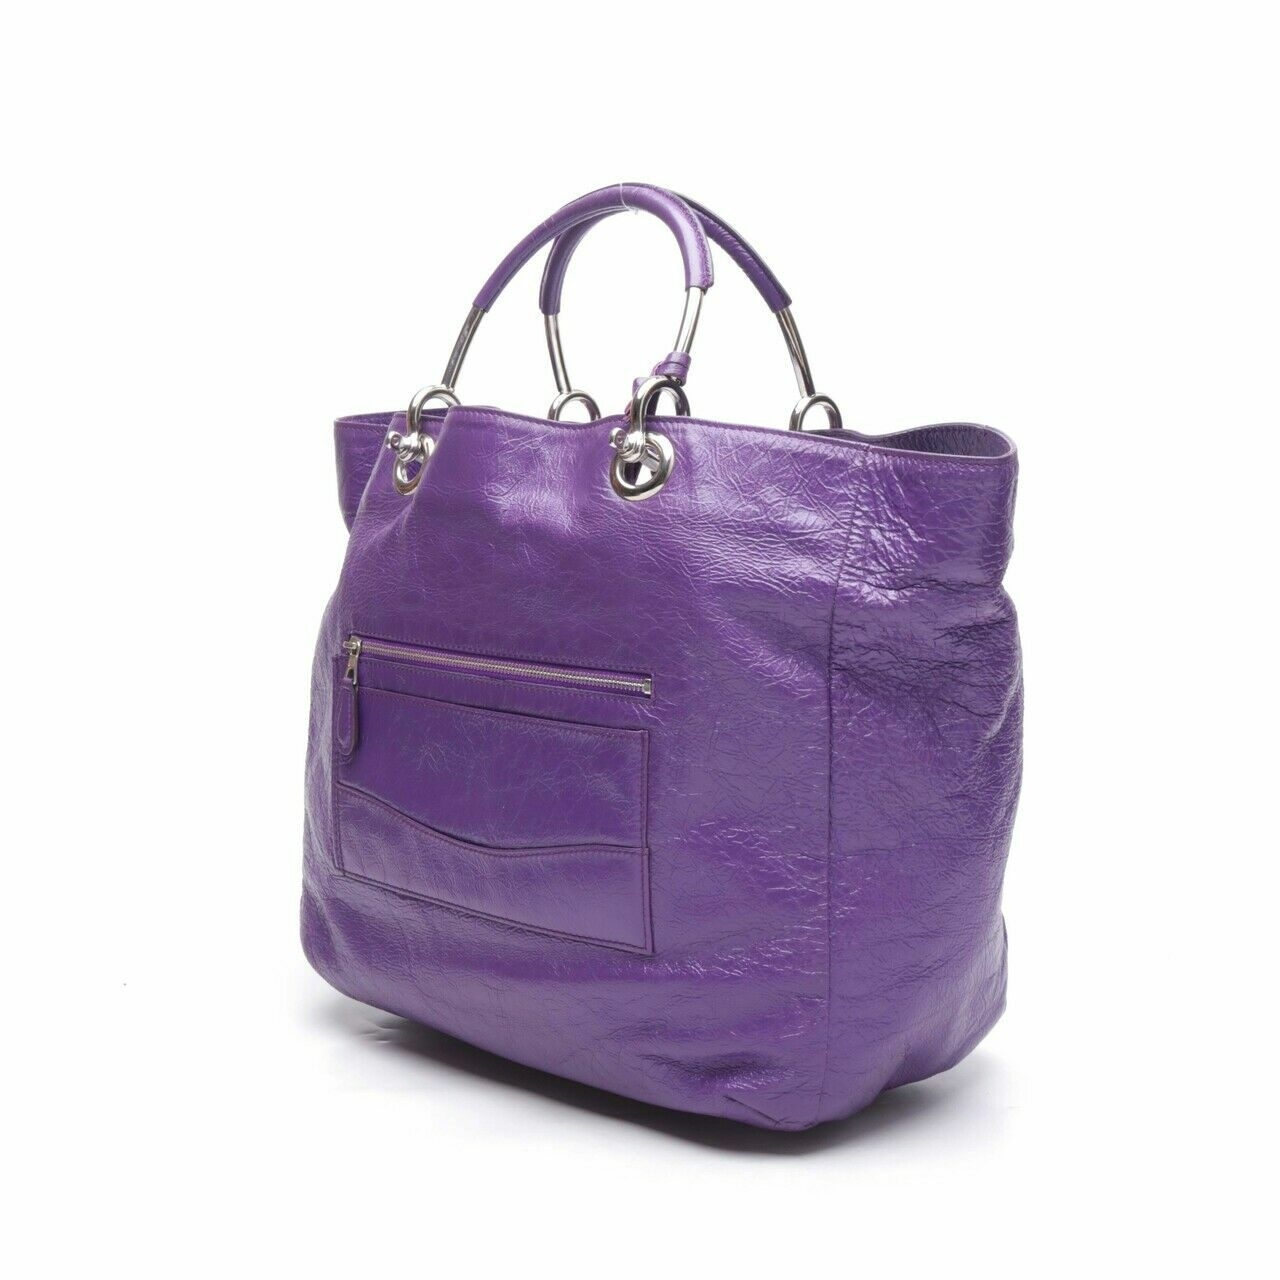 Balenciaga Purple Leather Tote Bag